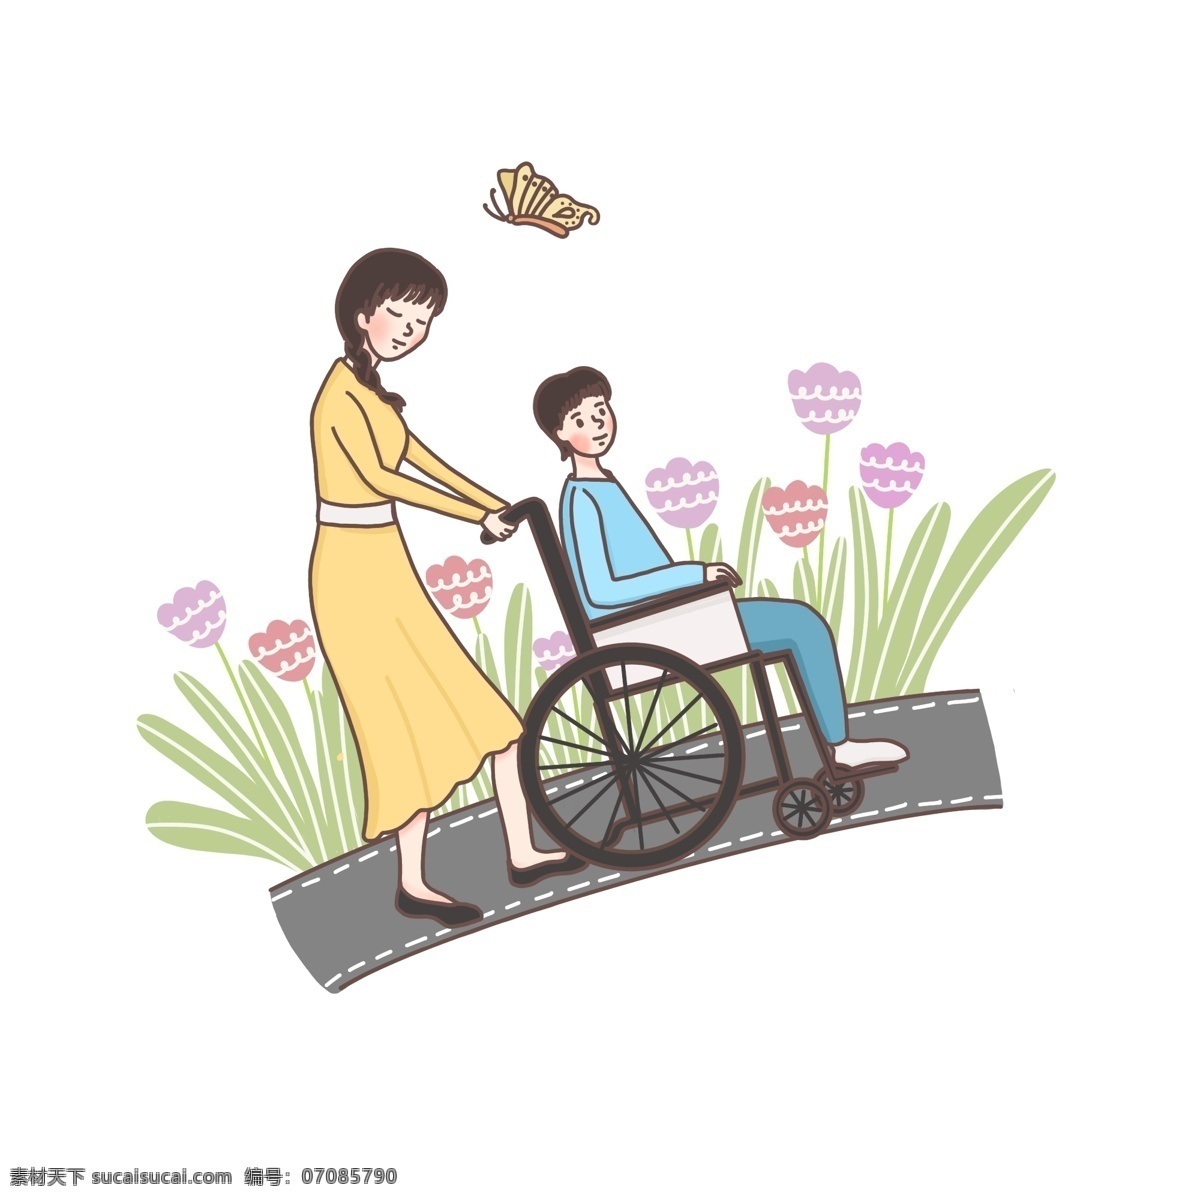 原创 手绘 帮助 残疾人 上坡 轮椅 场景 鲜花 人物 马路 腿脚不便